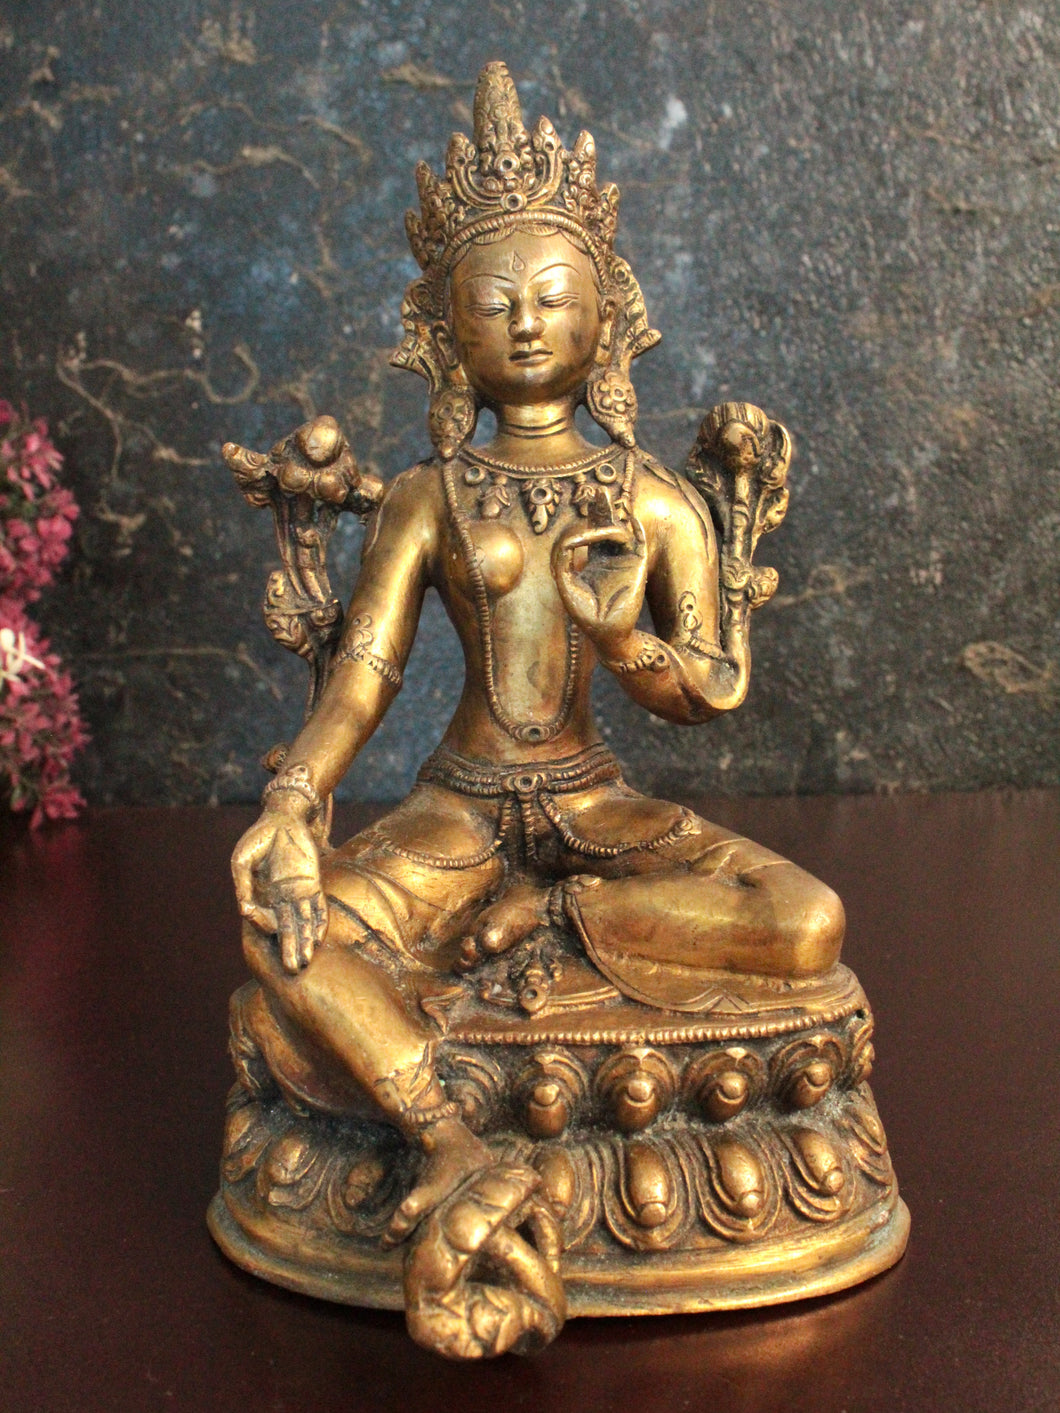 Exquisite Brass Vintage Goddess Tara Statue: A Timeless Work of Art